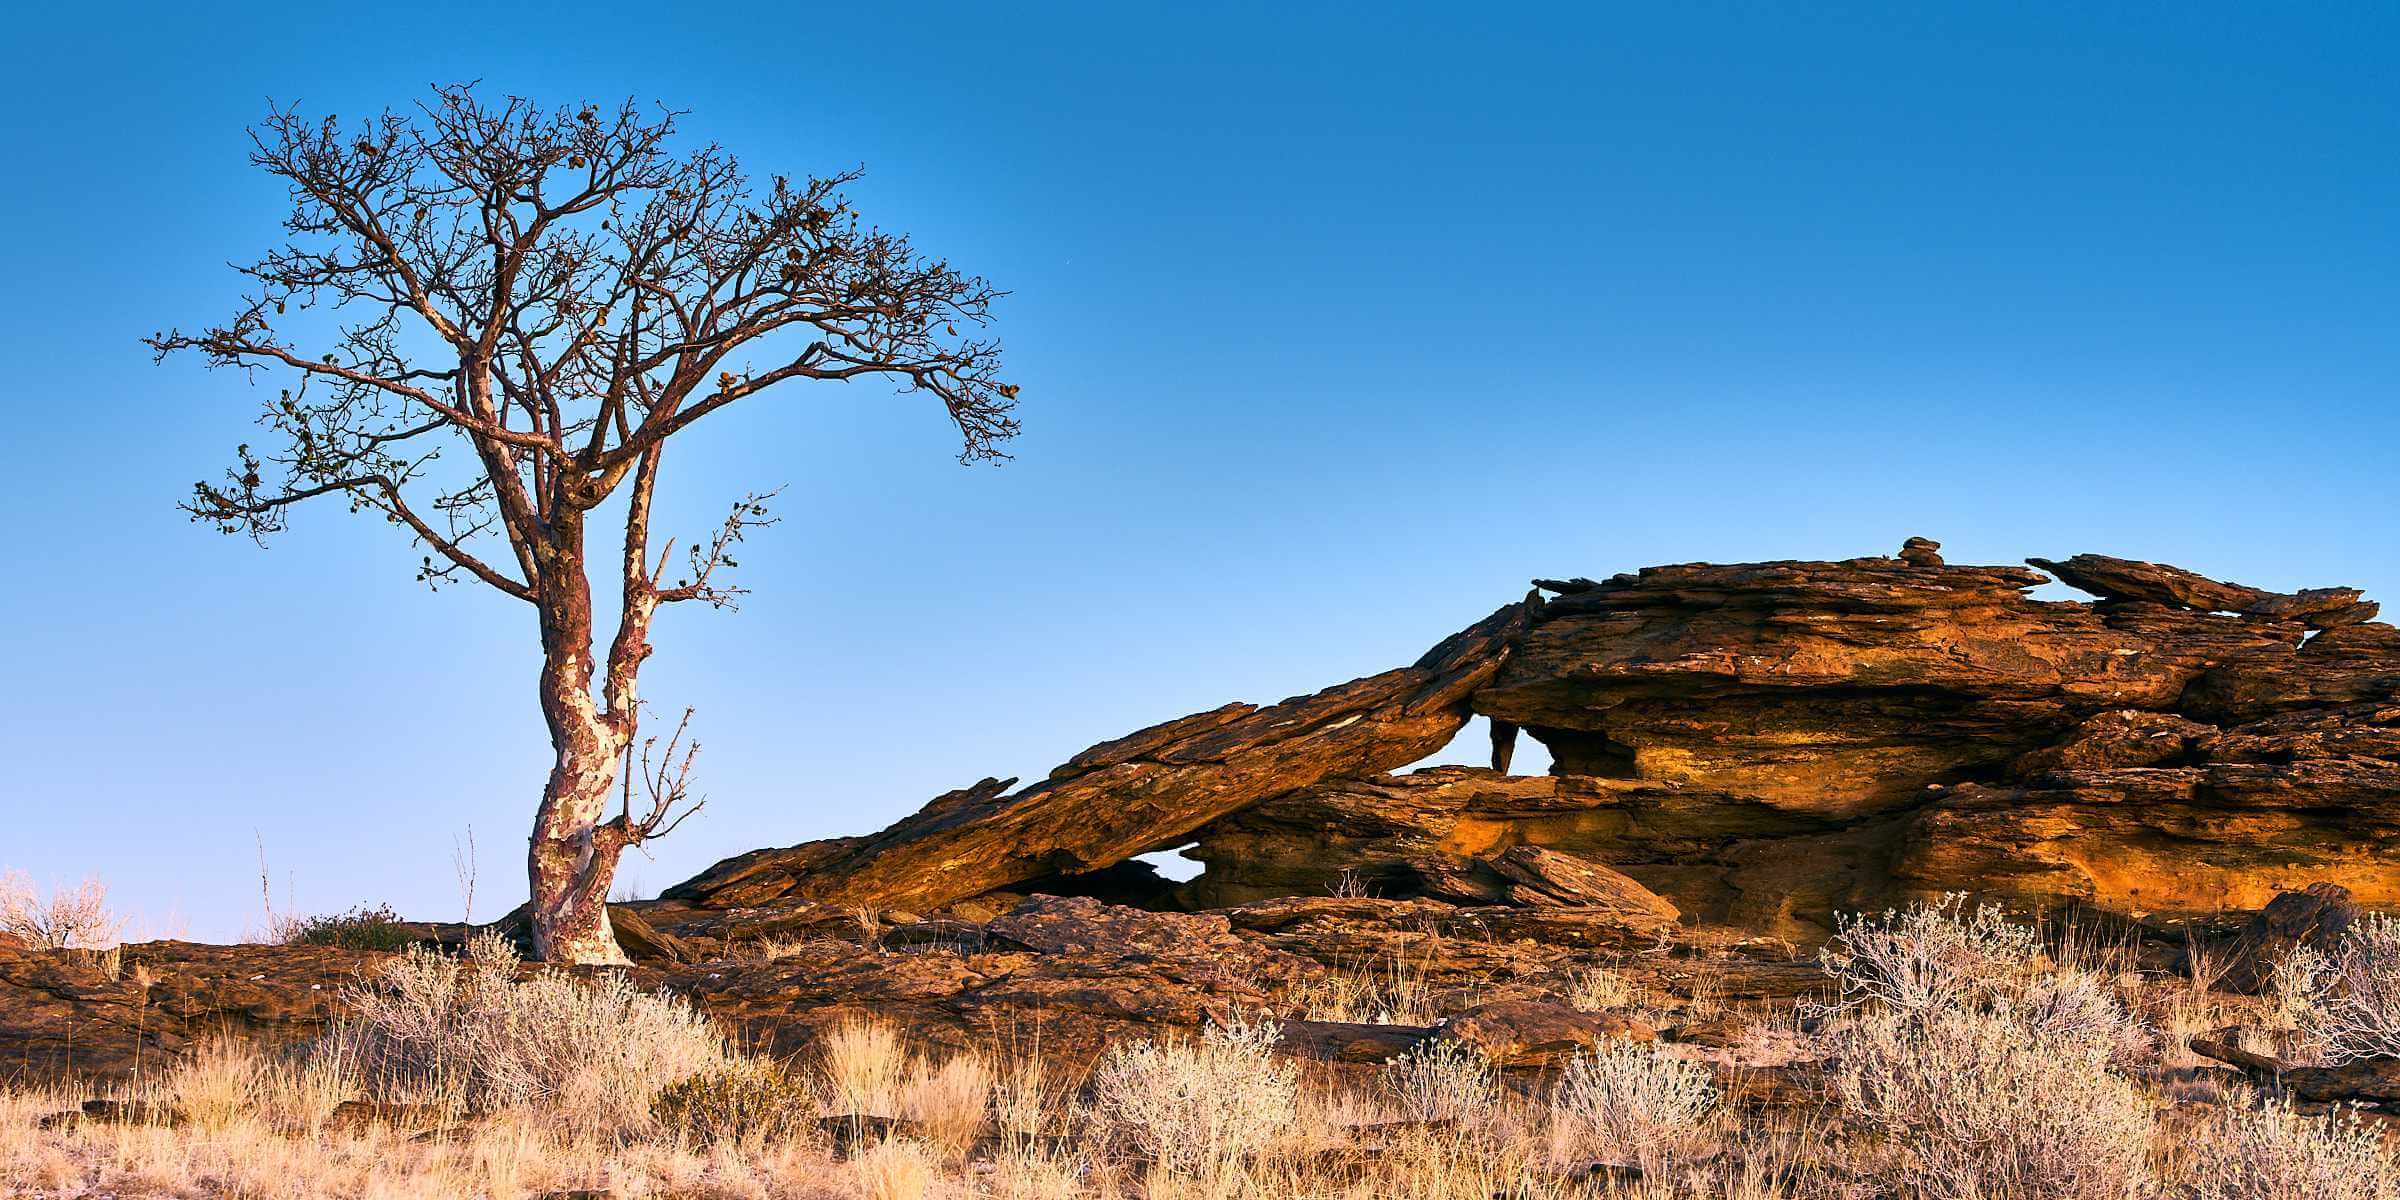 A Sterculia Africana on a rocky ridge against an inky blue sky.